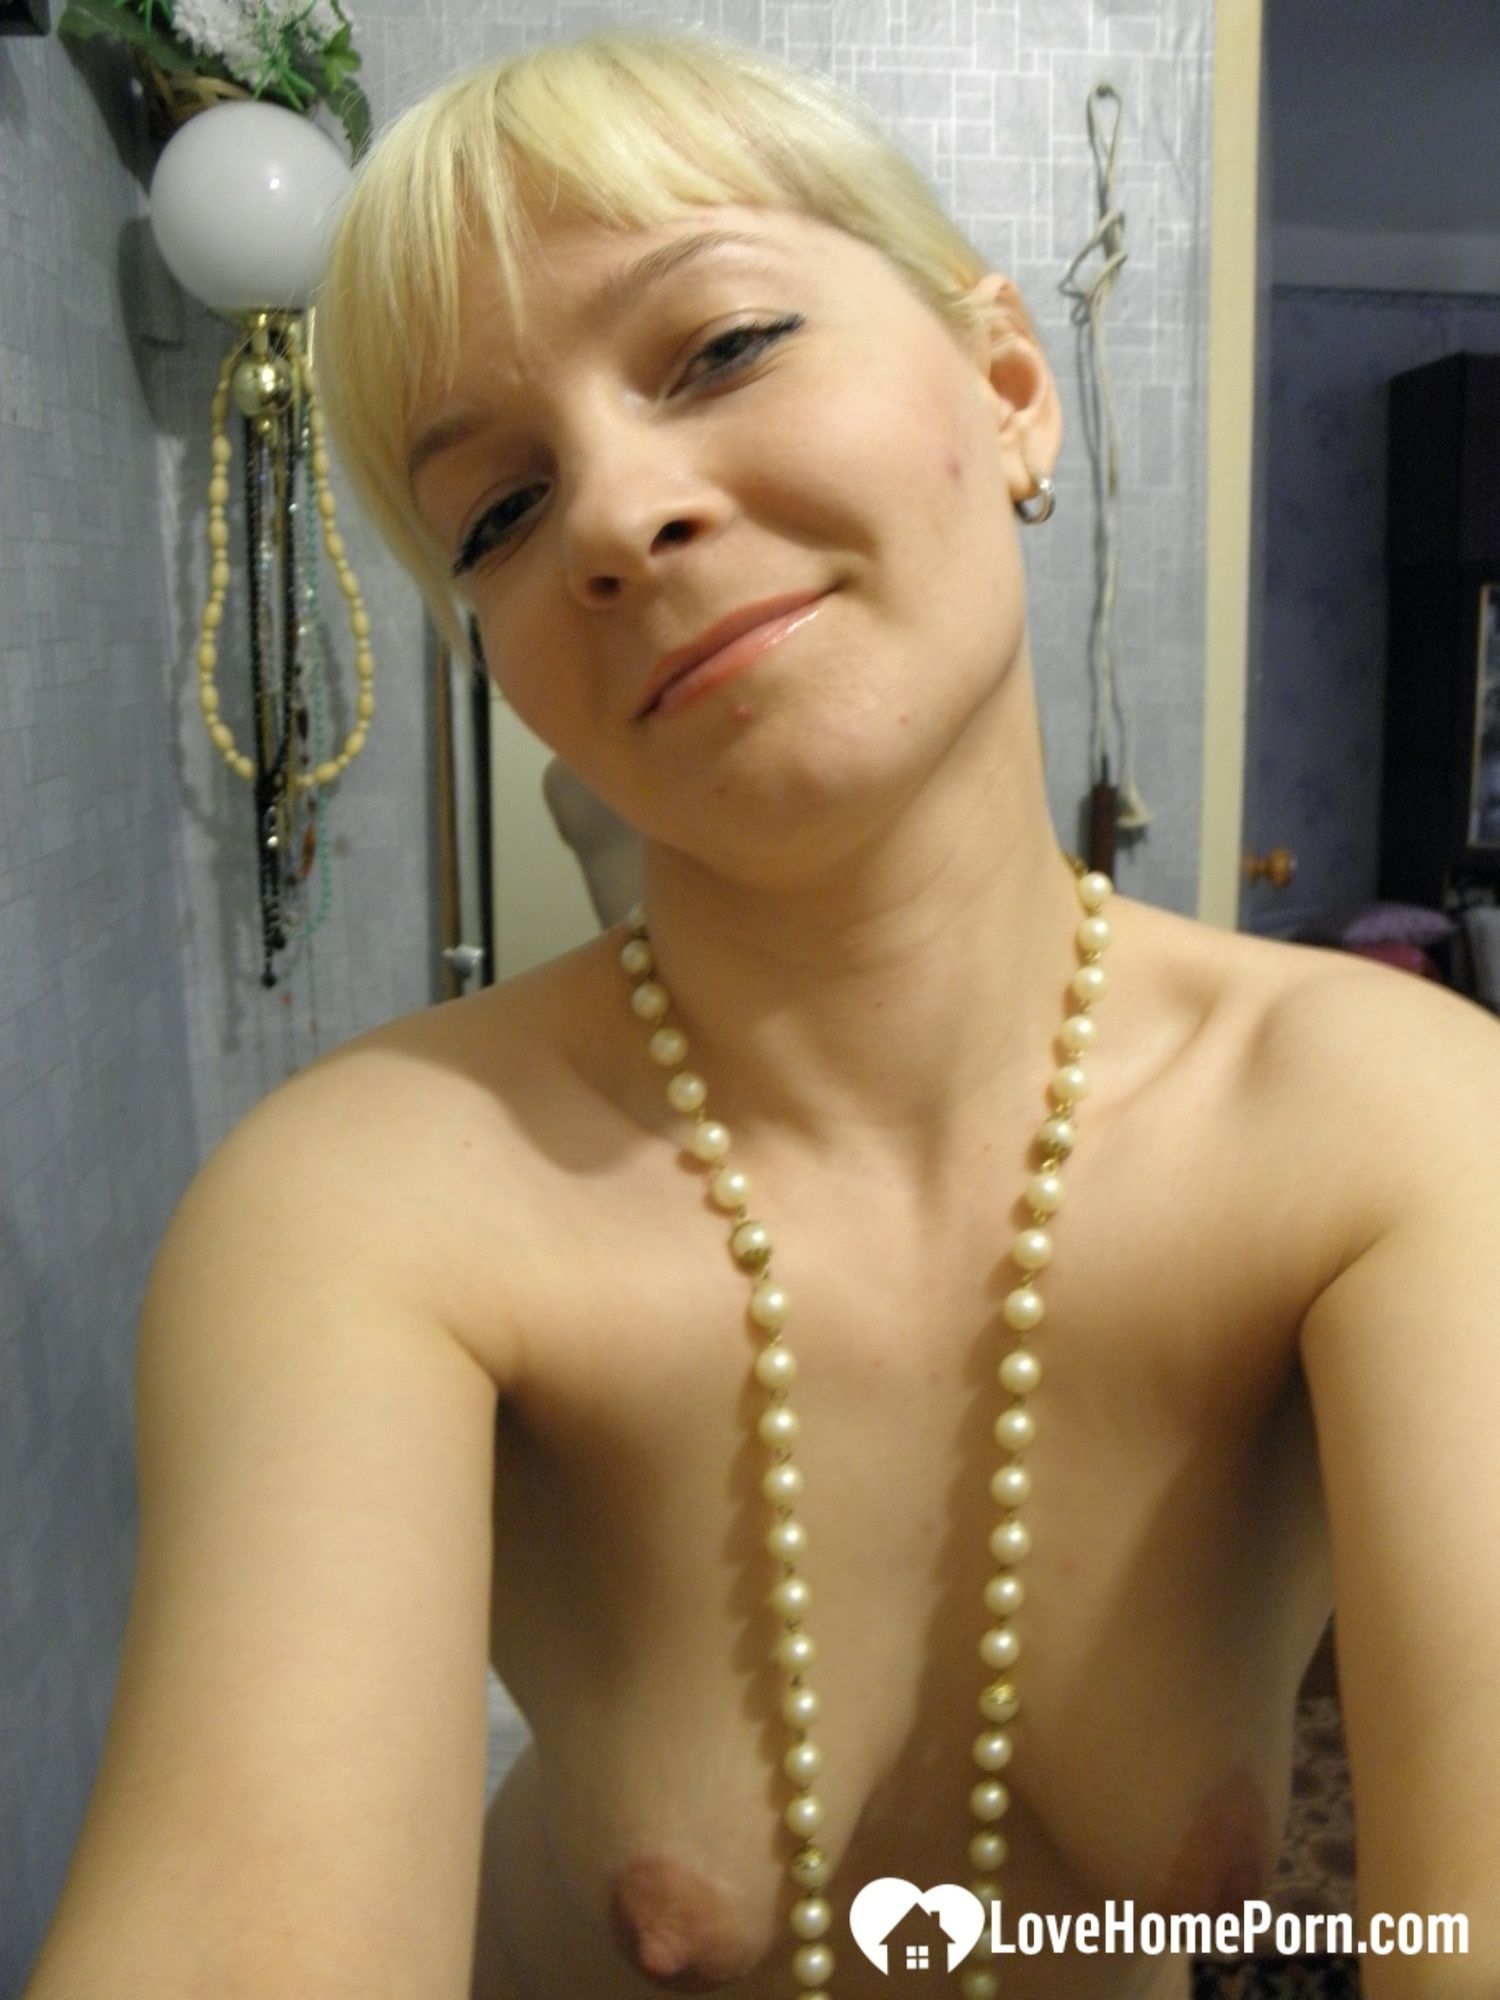 Aroused blonde in stockings taking naughty selfies #30